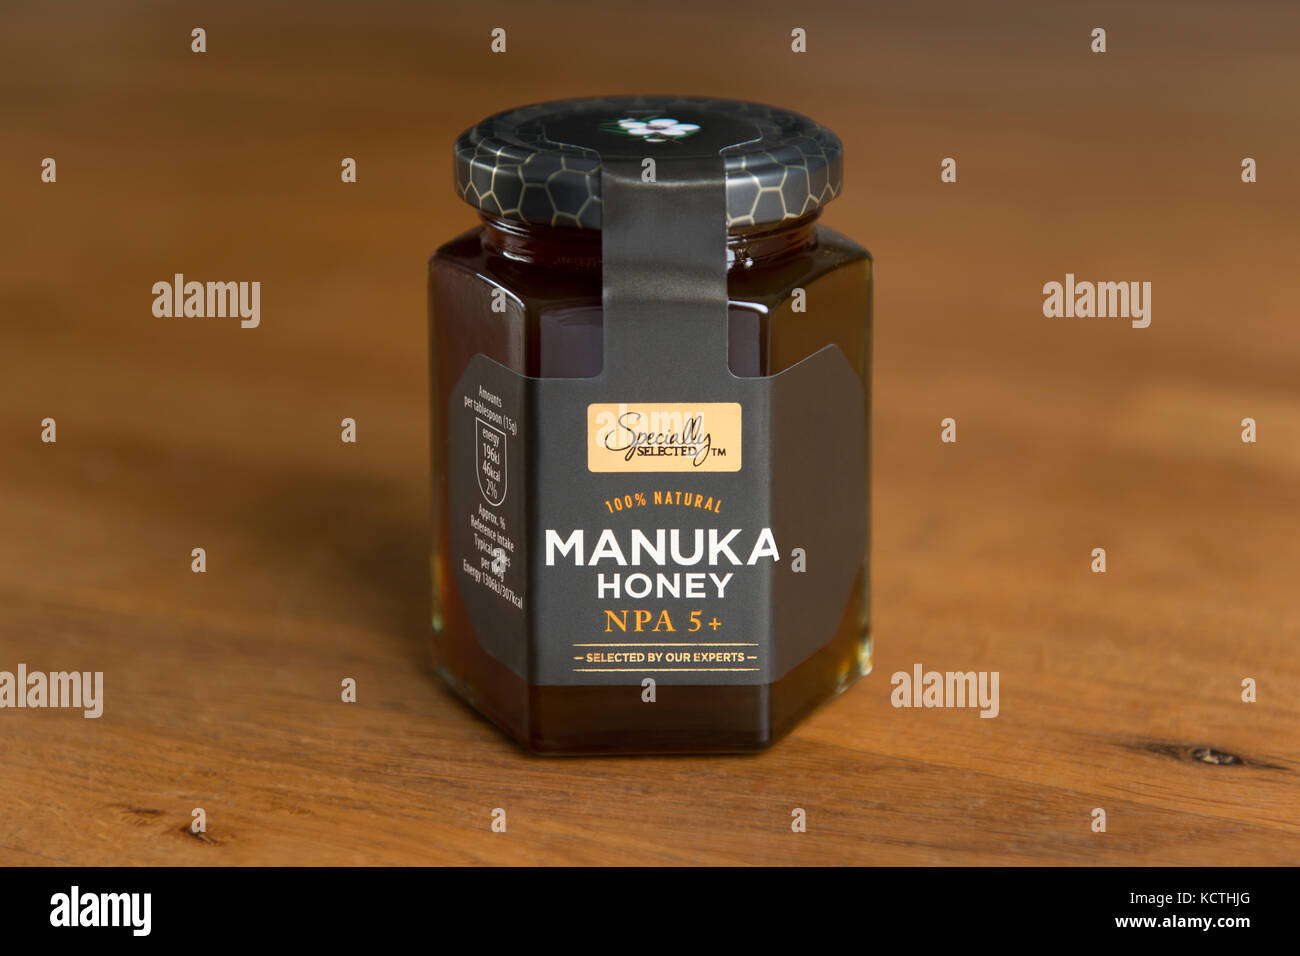 Un pot d'Aldi spécialement sélectionné le miel de Manuka est tourné contre un fond de bois (usage éditorial uniquement). Banque D'Images